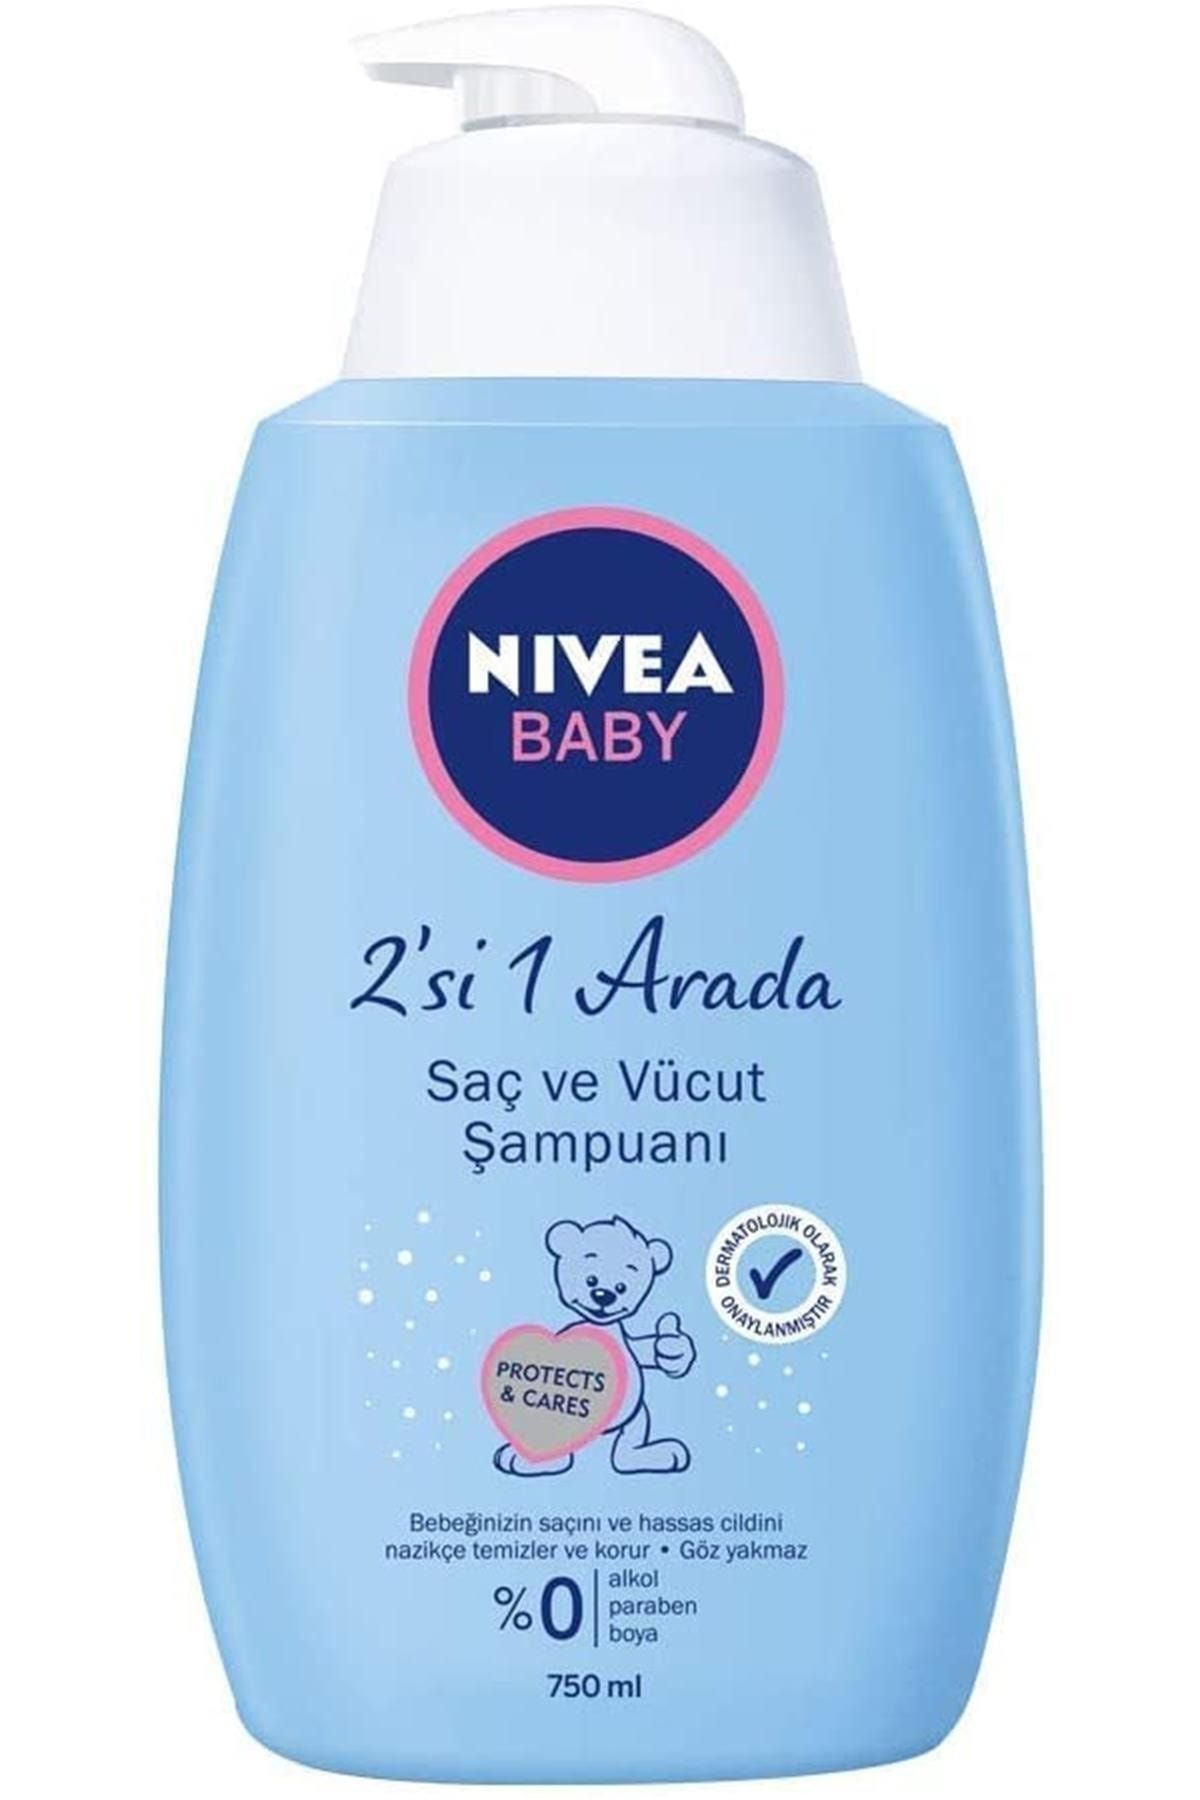 NIVEA Baby Saç Ve Vücut Şampuanı 750ml, Hassas Bebek Cildi, Göz Yakmayan Bebek Şampuanı, Alkolsüz,